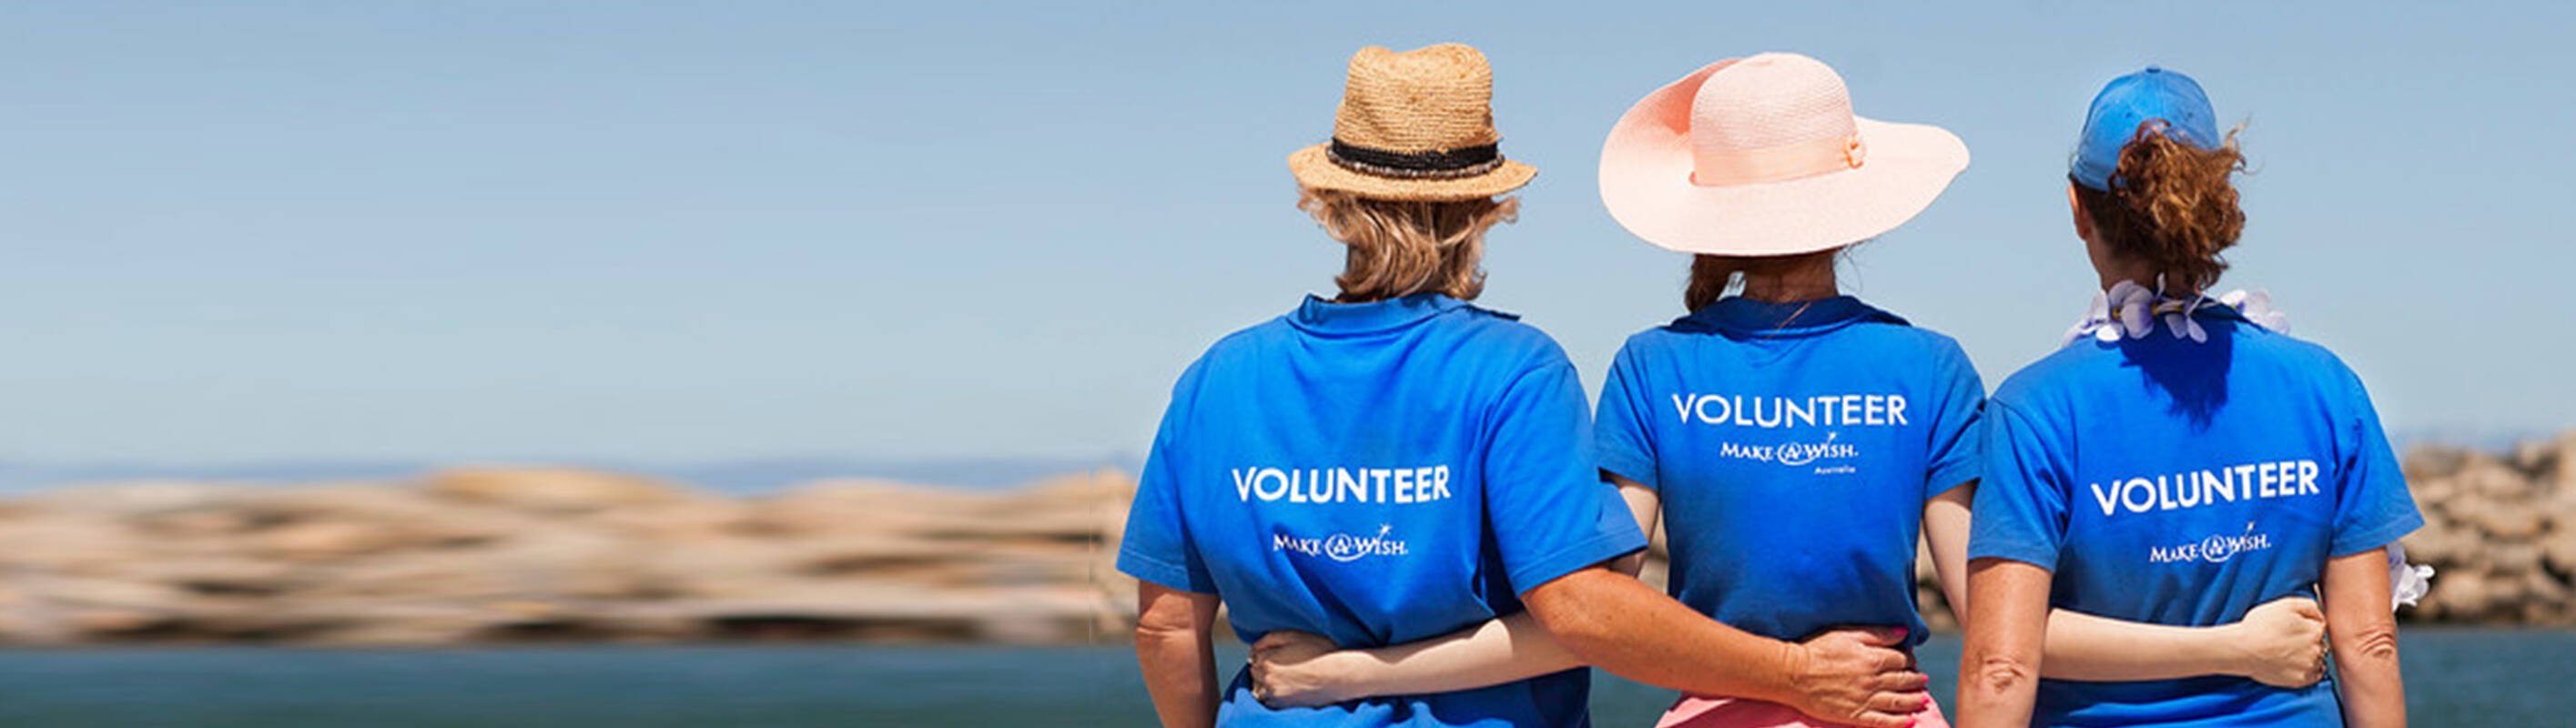 Volunteering Opportunities MakeAWish Australia MakeAWish Australia